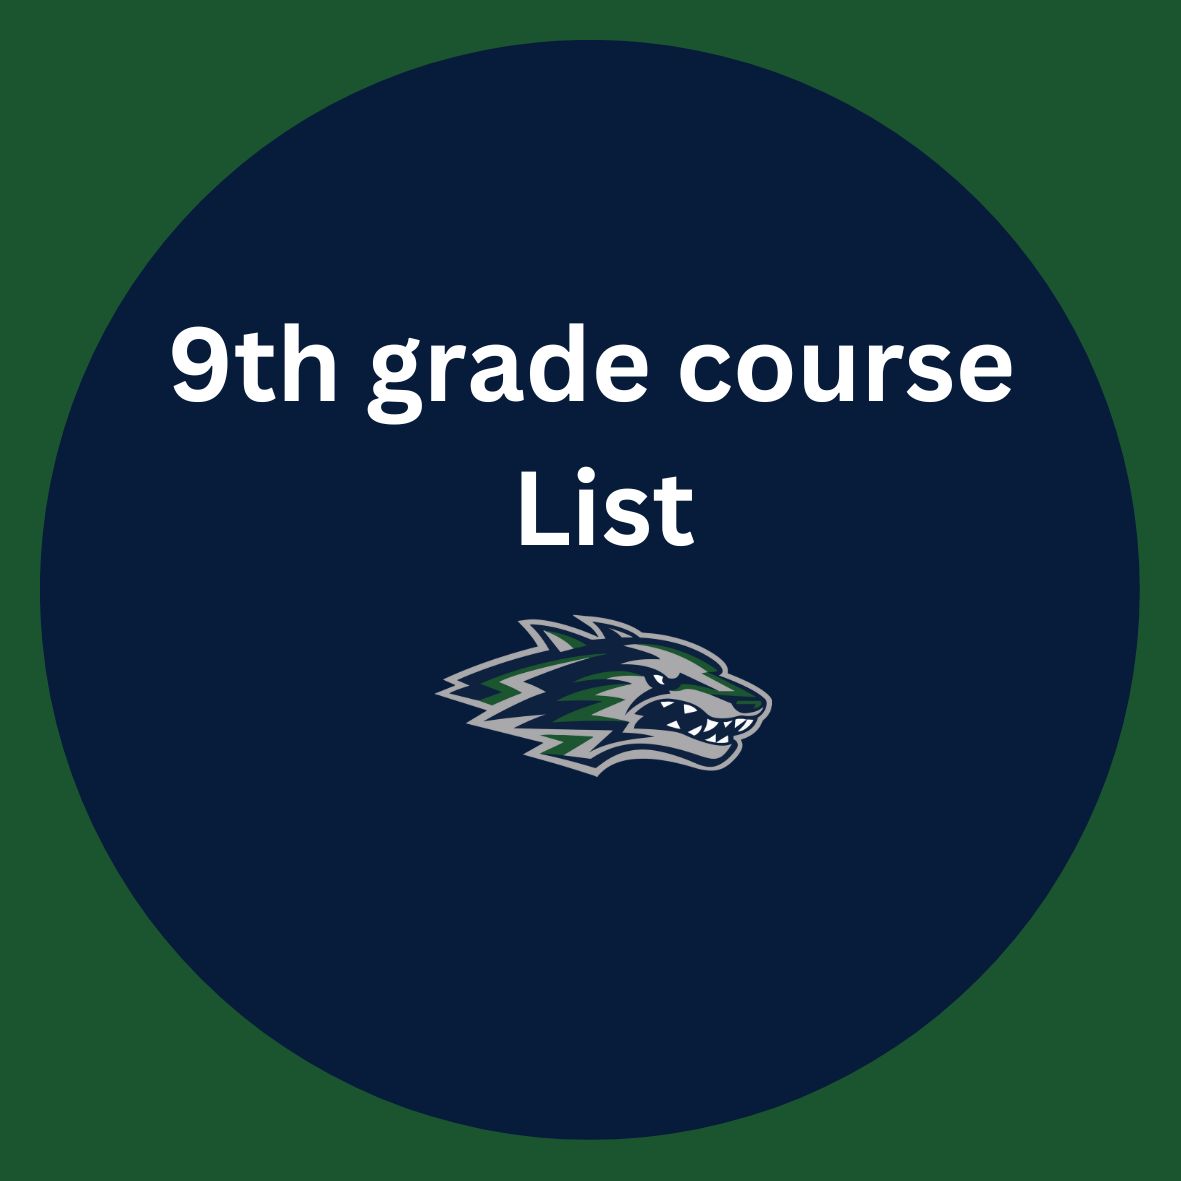 9th grade course list